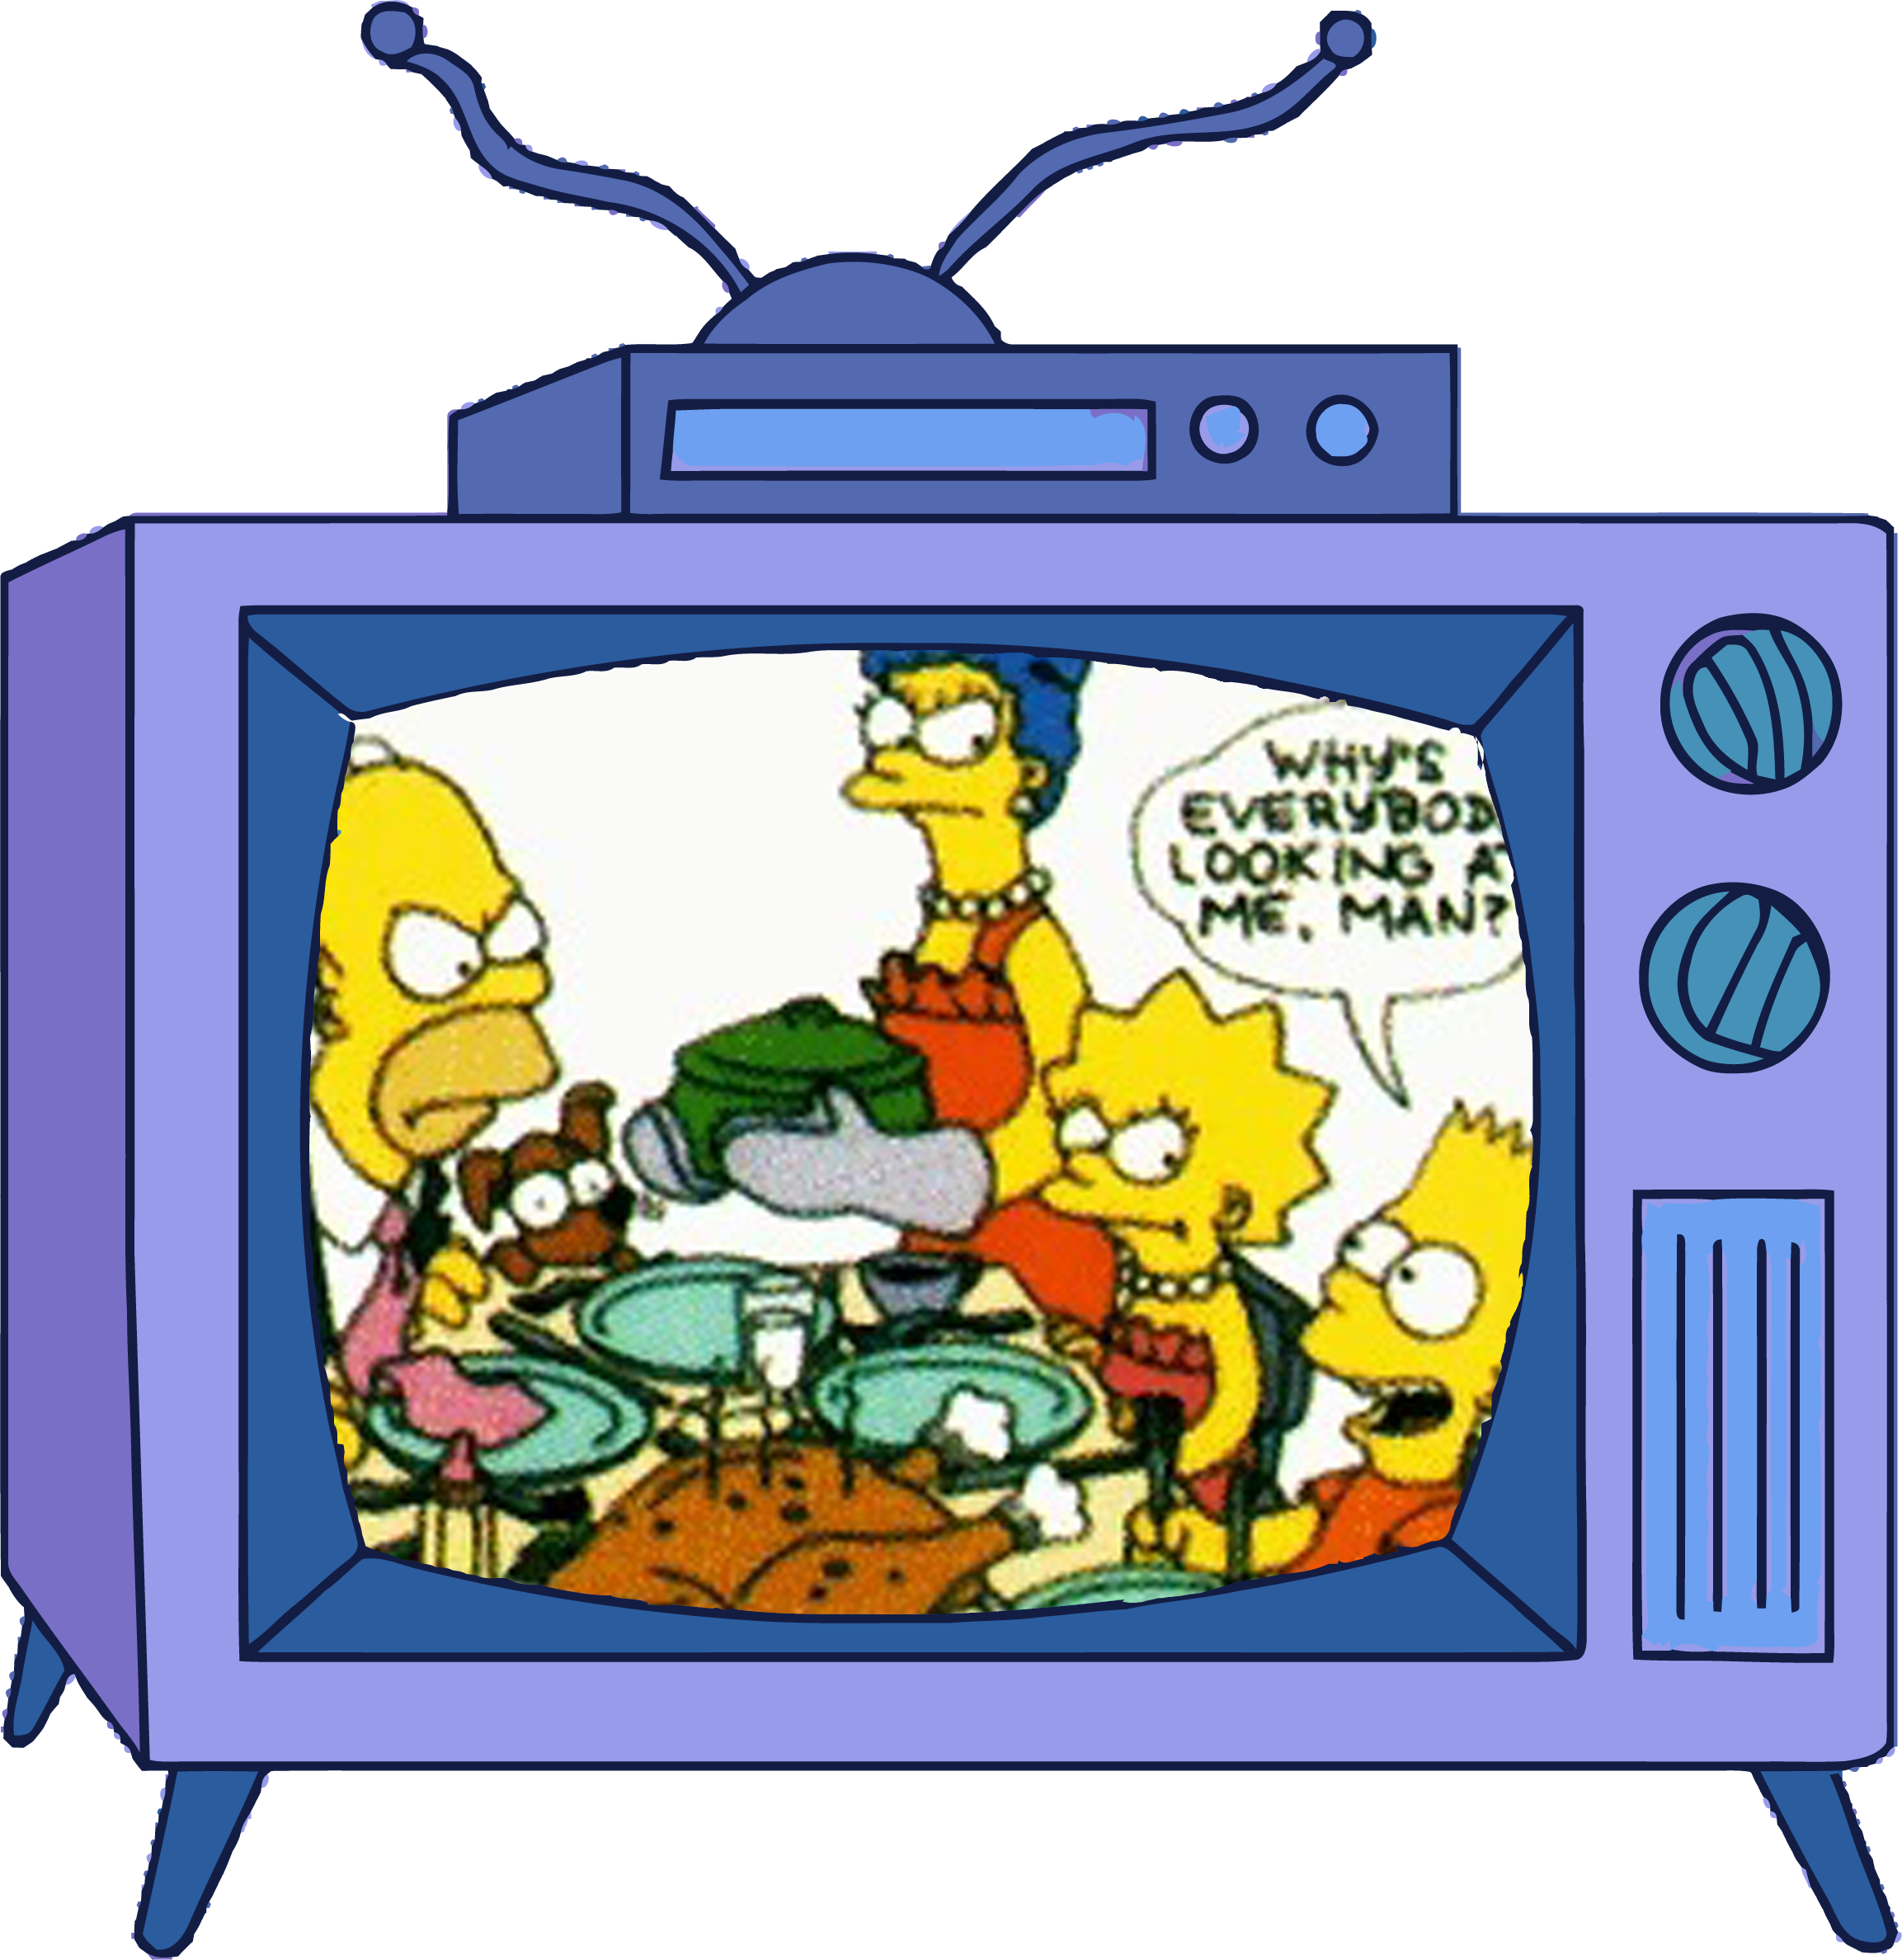 Bart vs. Thanksgiving